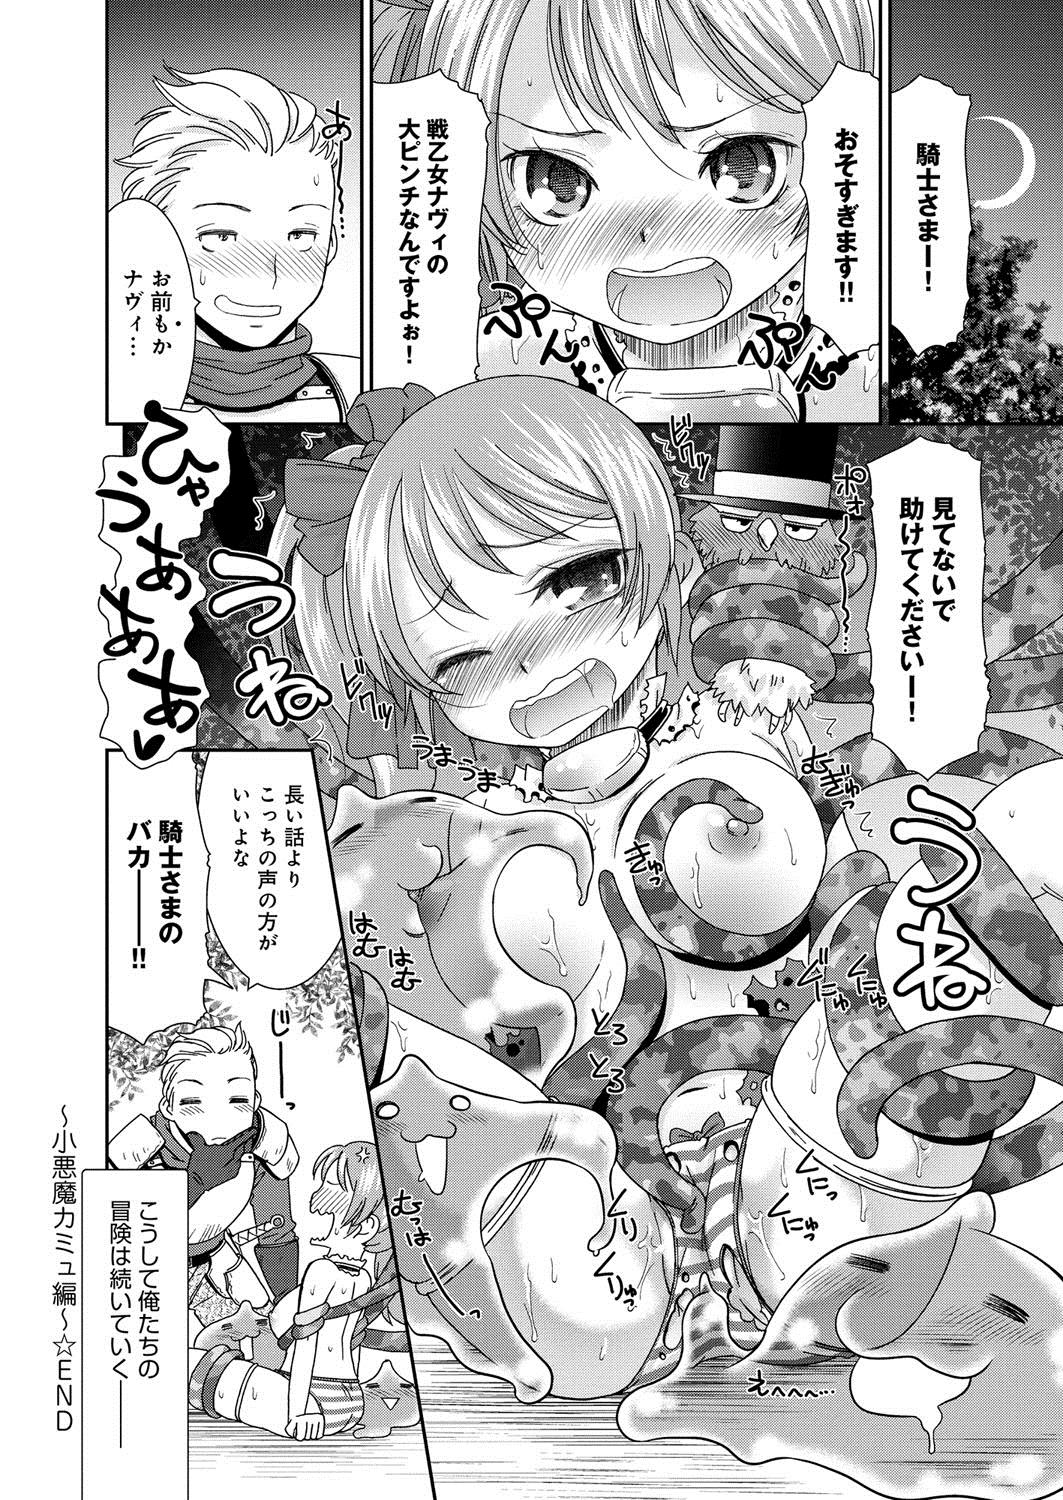 [Anthology] Lord of Valkyrie Adult - Comic Anthology R18 Handakara Saigomade... Mou, Kishi-sama no Ecchi♪ 24